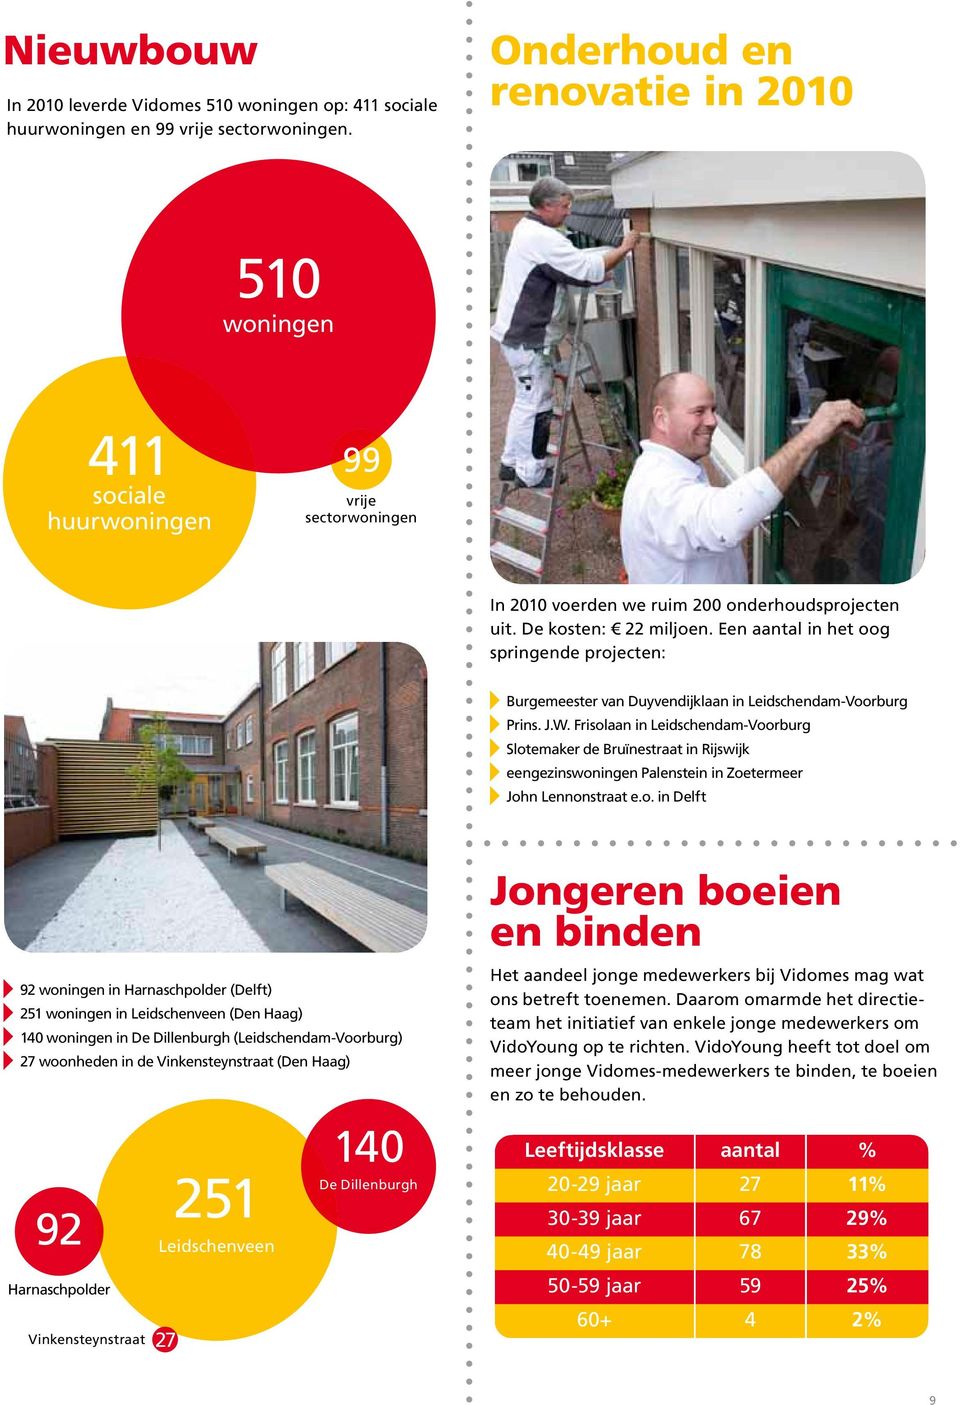 Een aantal in het oog springende projecten: Burgemeester van Duyvendijklaan in Leidschendam-Voorburg Prins. J.W.